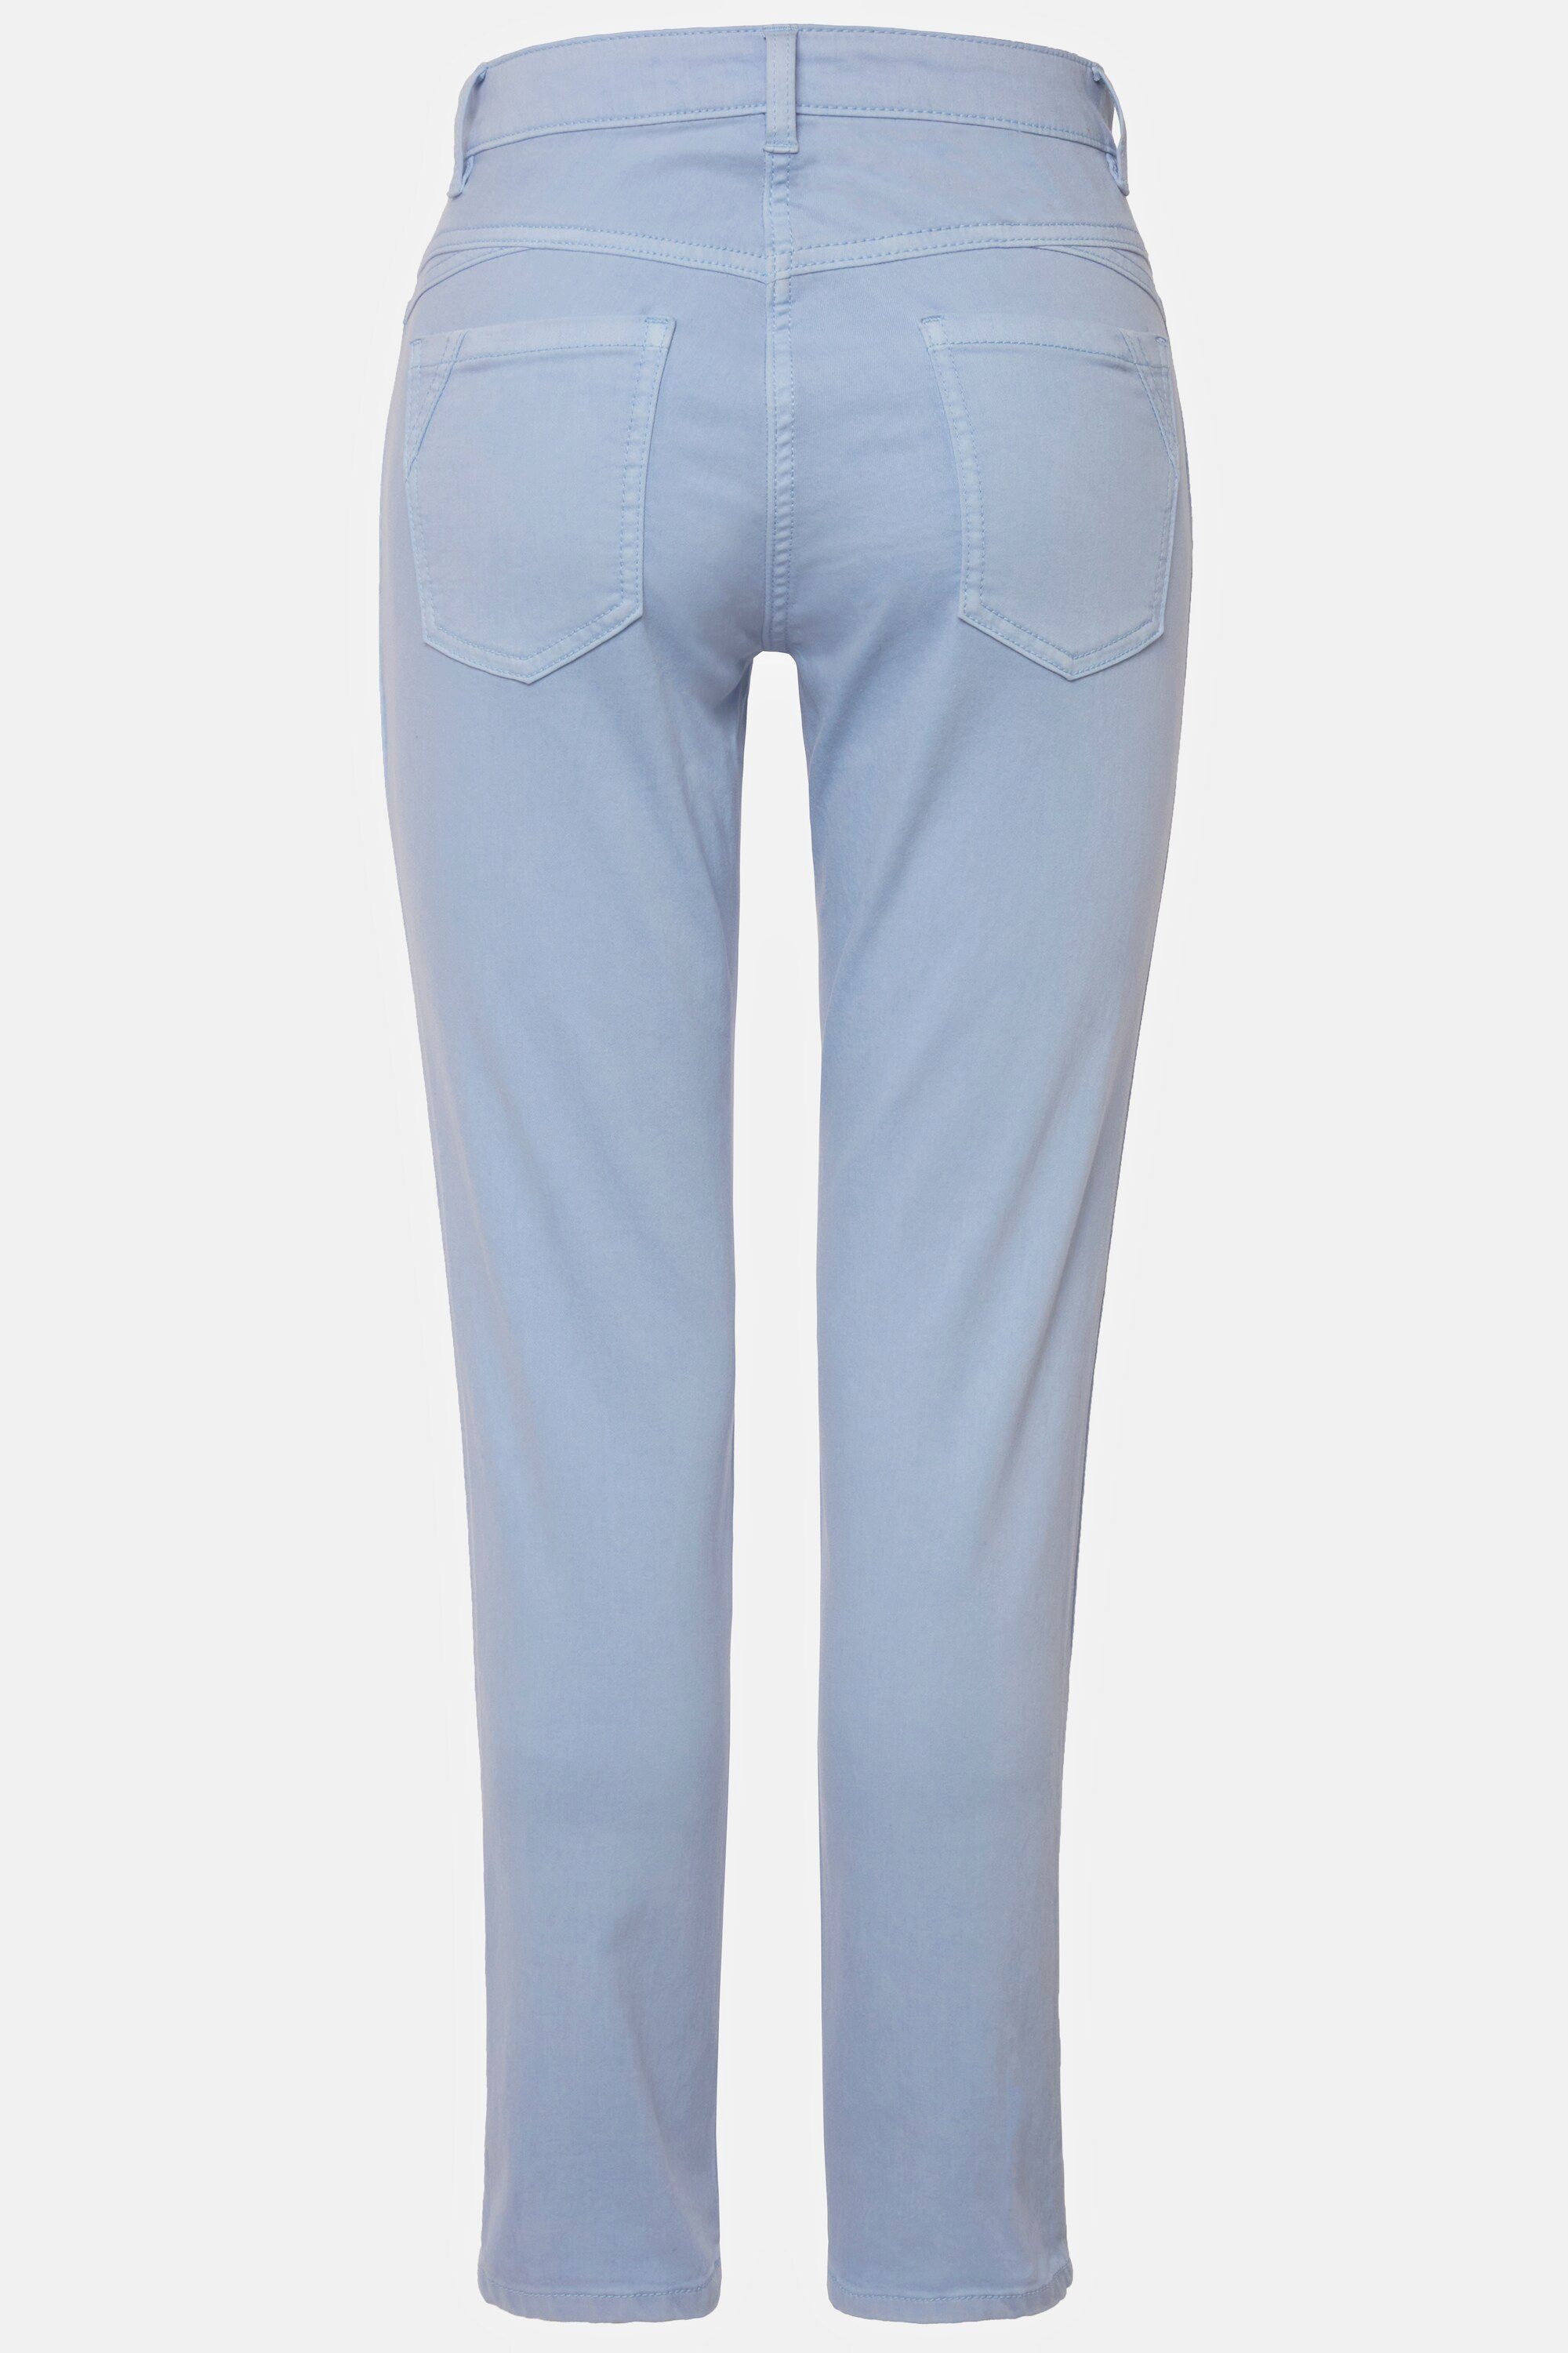 Passform hellblau 5-Pocket-Jeans Jeans Tina Laurasøn gerade seitliche Zierfalten